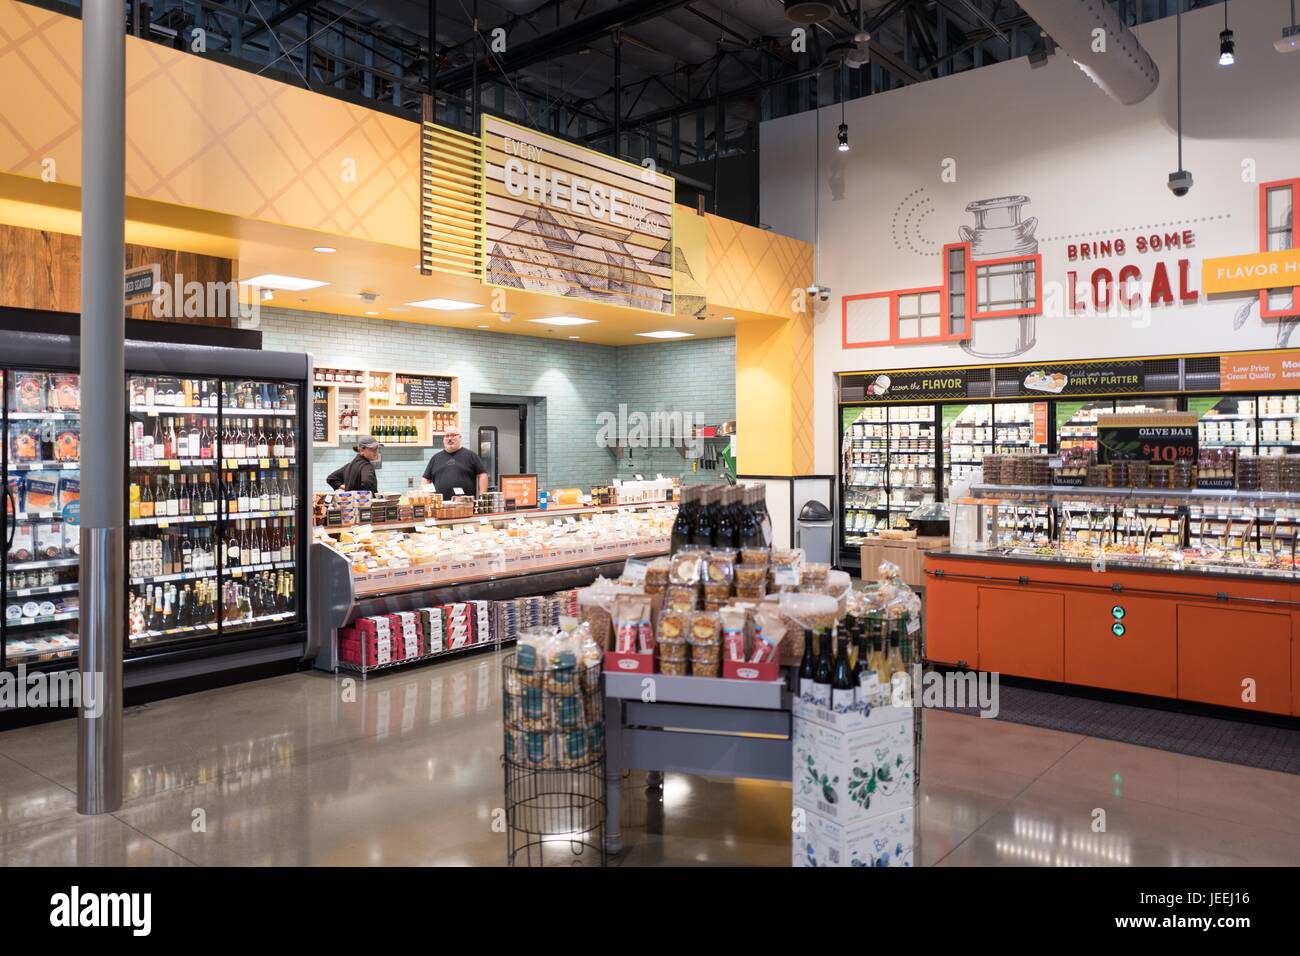 Käse und lokale Lebensmittel sind auf dem Display an der Whole Foods Market Lebensmittelgeschäft in Dublin, Kalifornien, 16. Juni 2017. Stockfoto